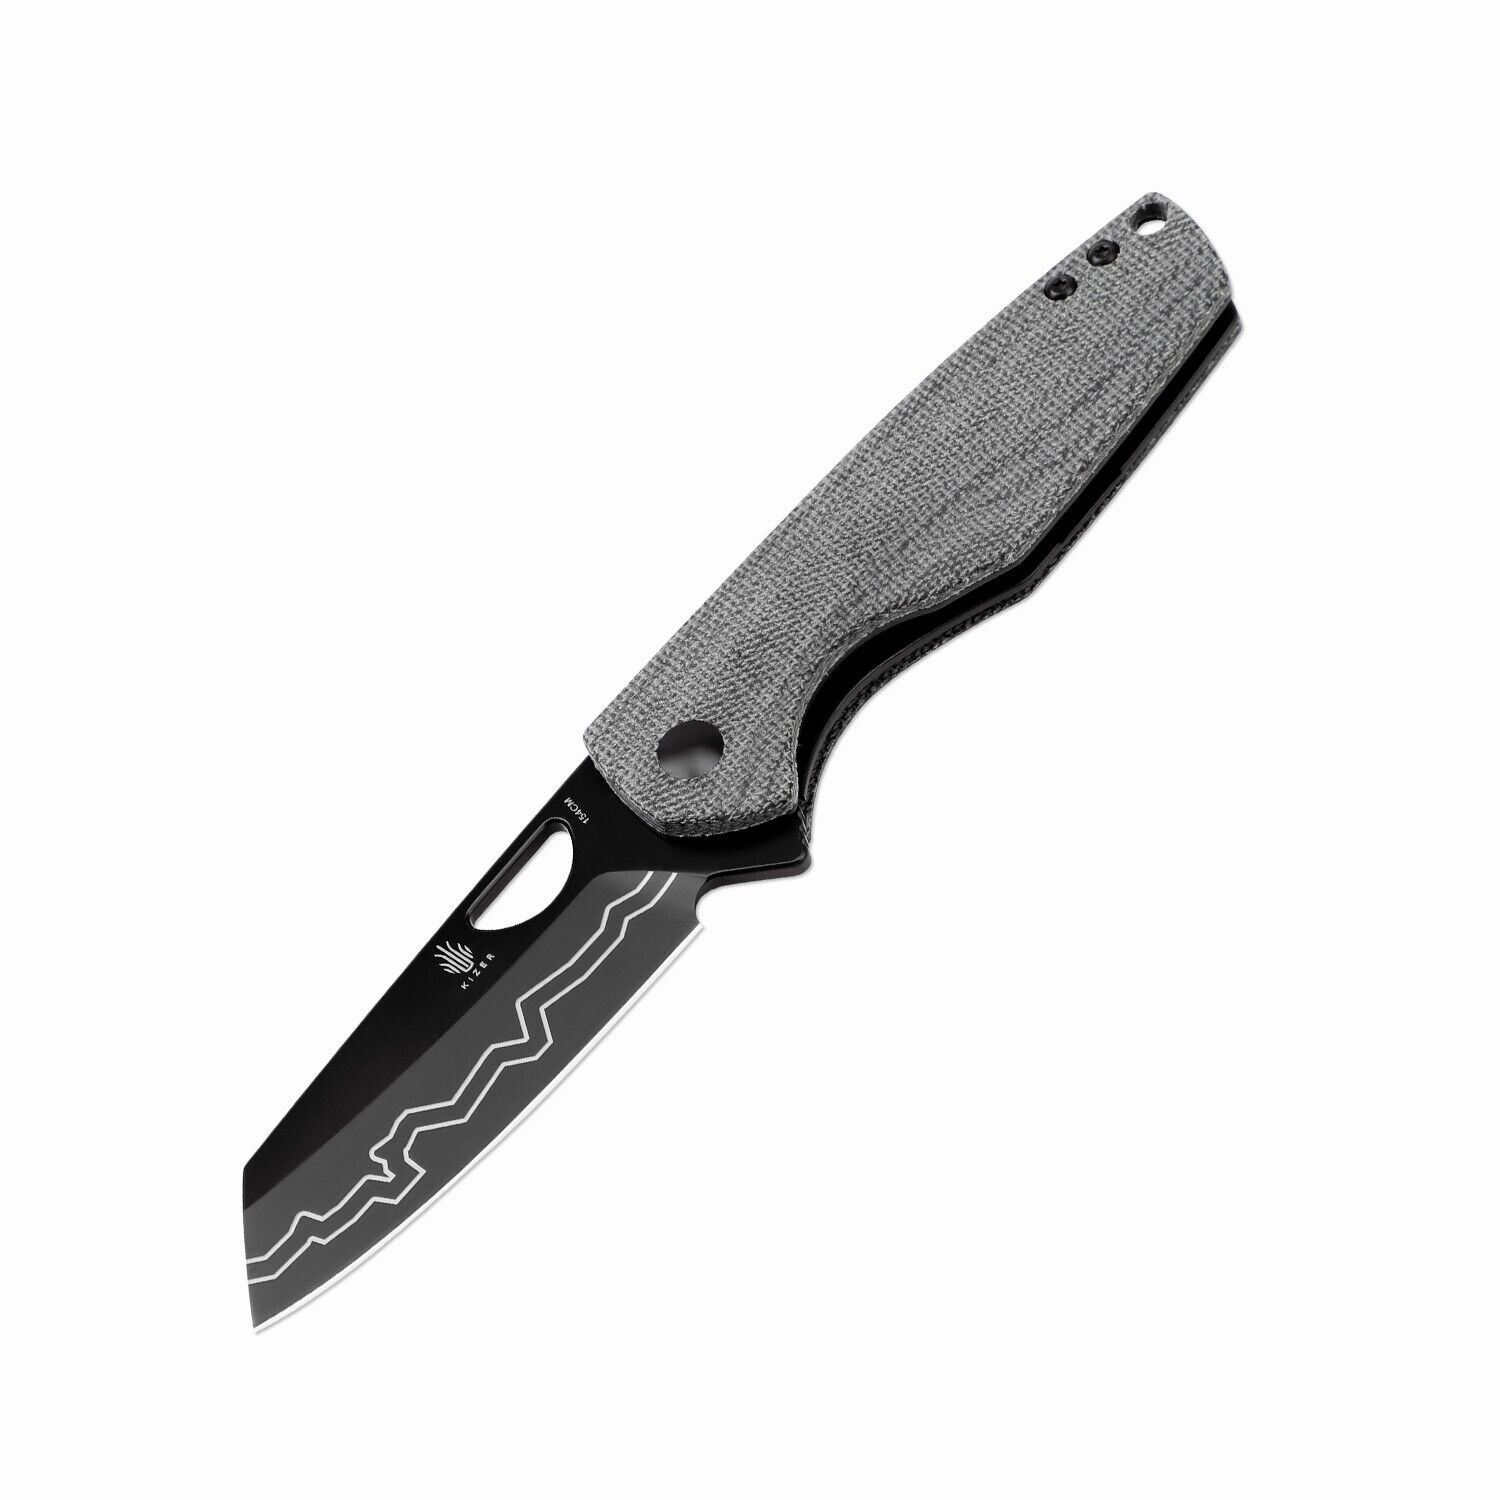 Kizer Sparrow Pocket Knife 154CM Steel EDC Knife Black Micarta Handle V3628C1